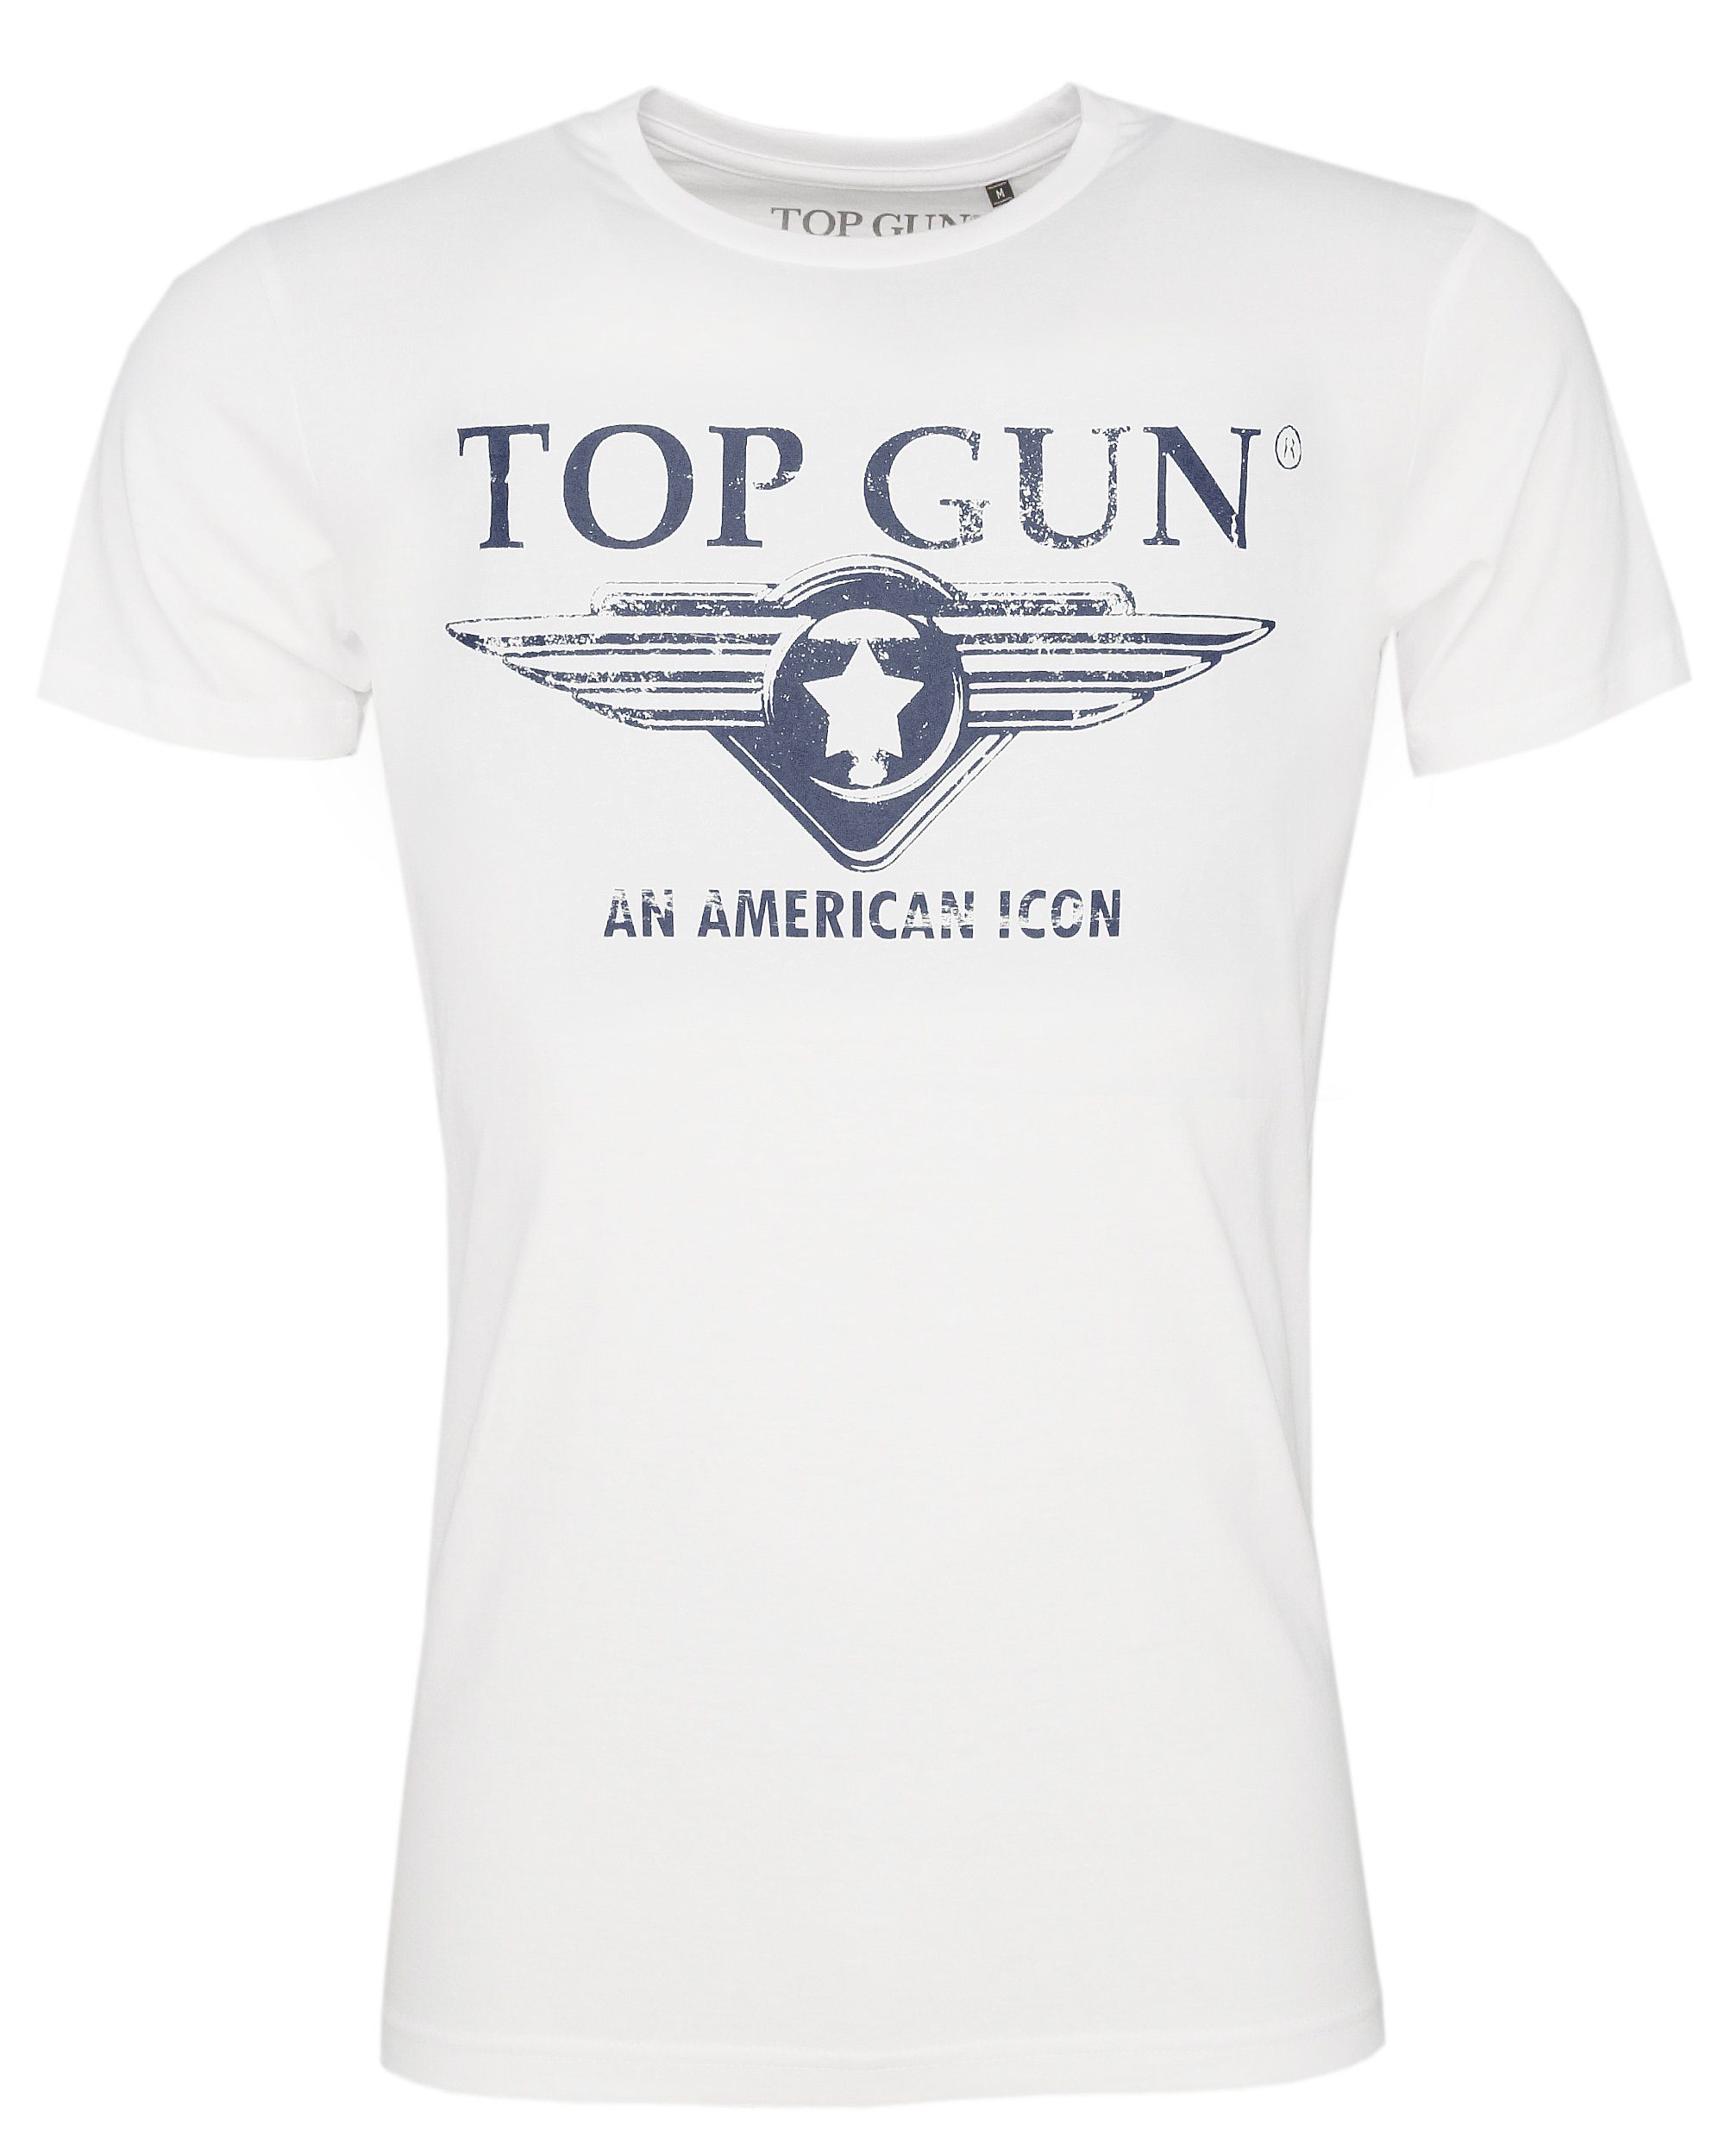 T-Shirt GUN dark TOP TG20191071 blue Beach